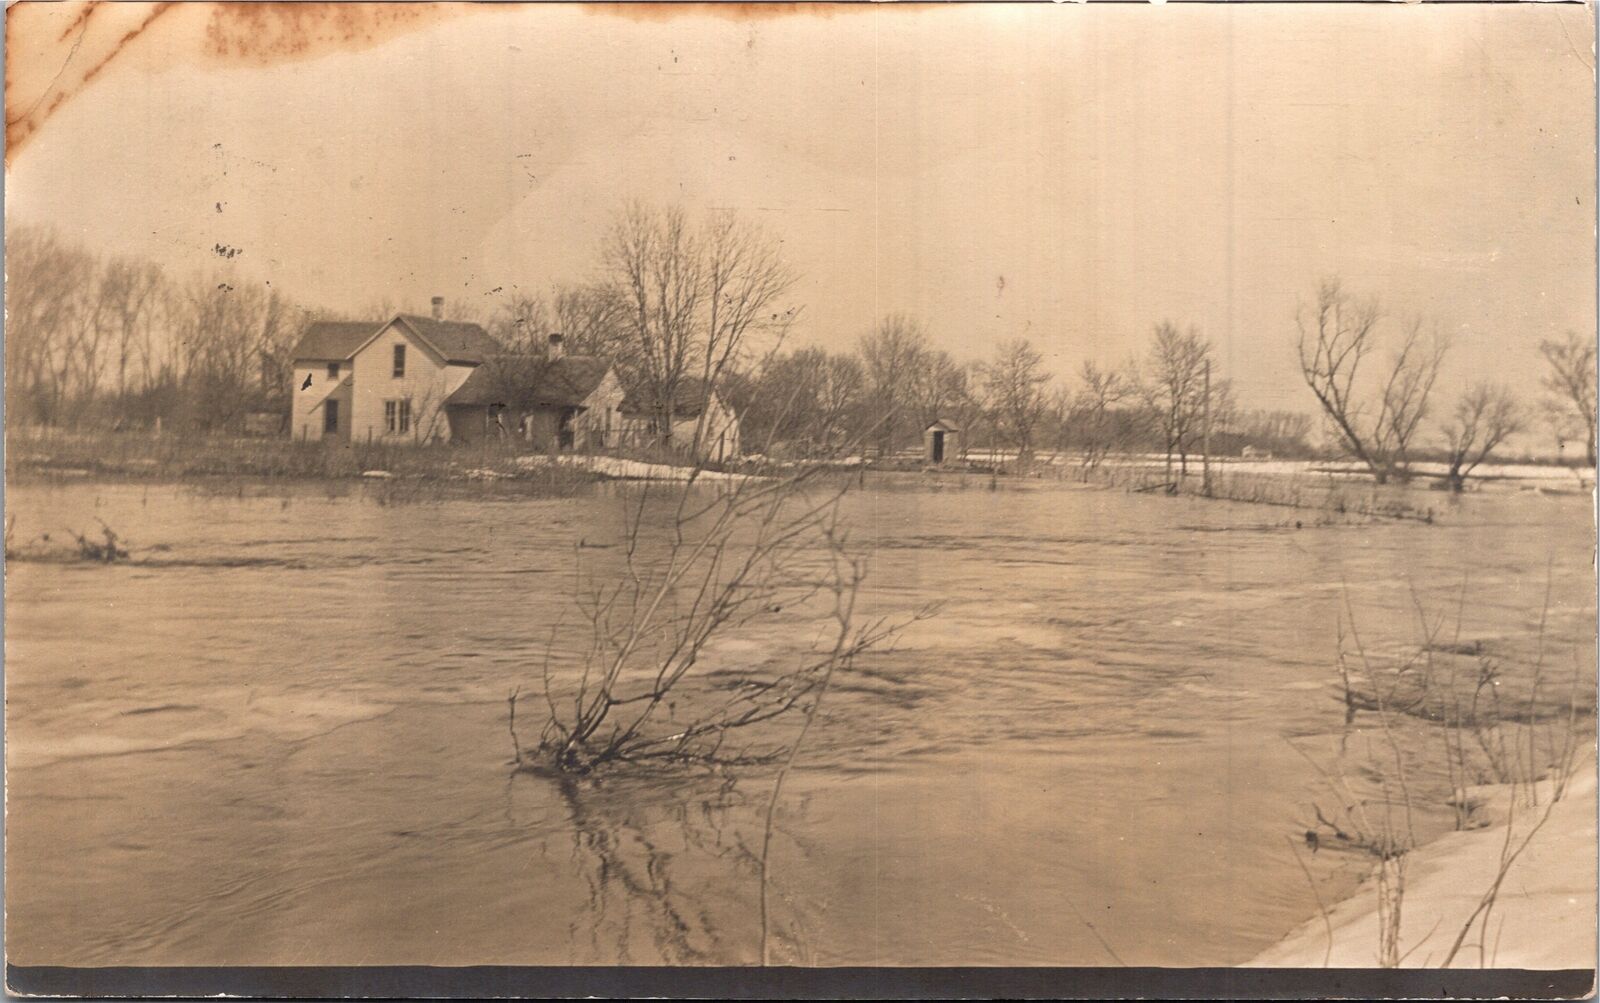 RPPC House in Flooded plain postmark Nebraska